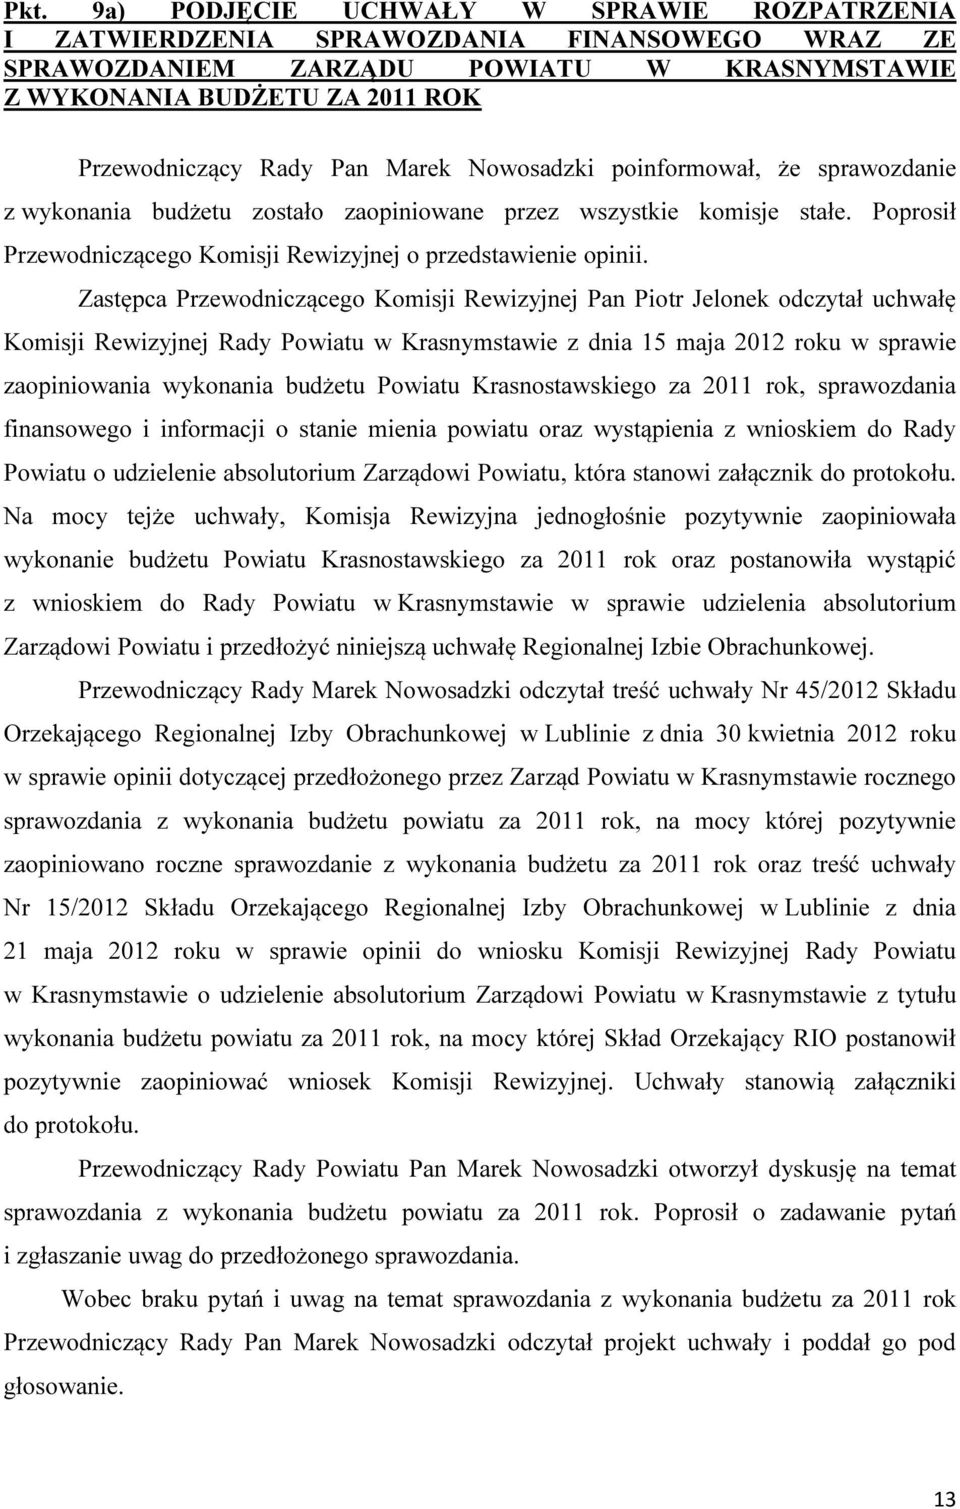 Zastępca Przewodniczącego Komisji Rewizyjnej Pan Piotr Jelonek odczytał uchwałę Komisji Rewizyjnej Rady Powiatu w Krasnymstawie z dnia 15 maja 2012 roku w sprawie zaopiniowania wykonania budżetu